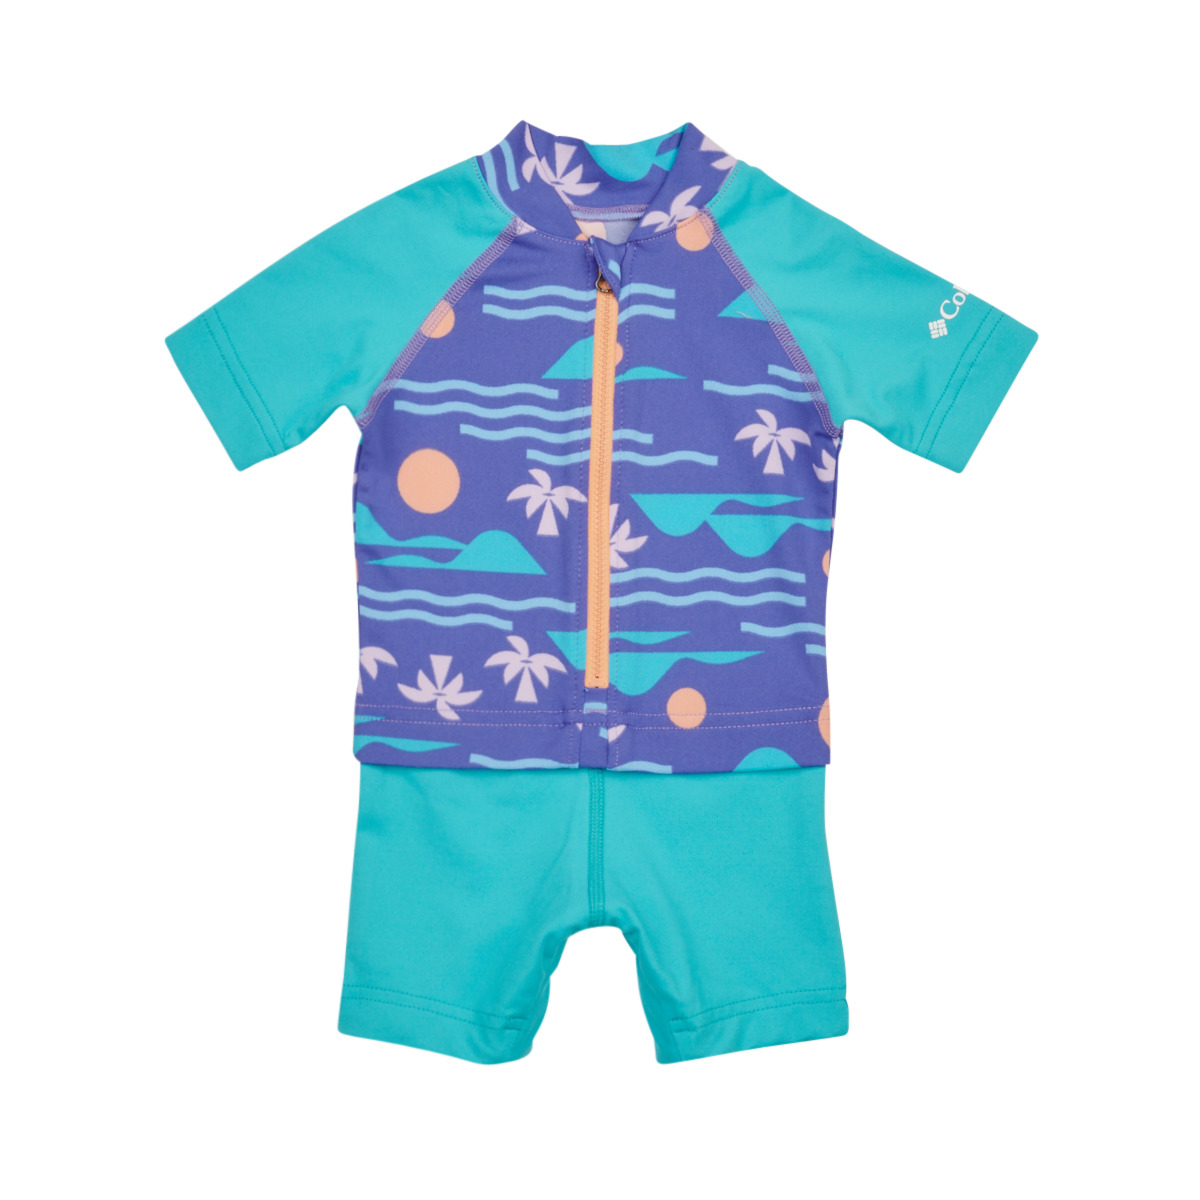 Textiel Jongens Zwembroeken/ Zwemshorts Columbia Sandy Shores Sunguard Suit Violet / Blauw